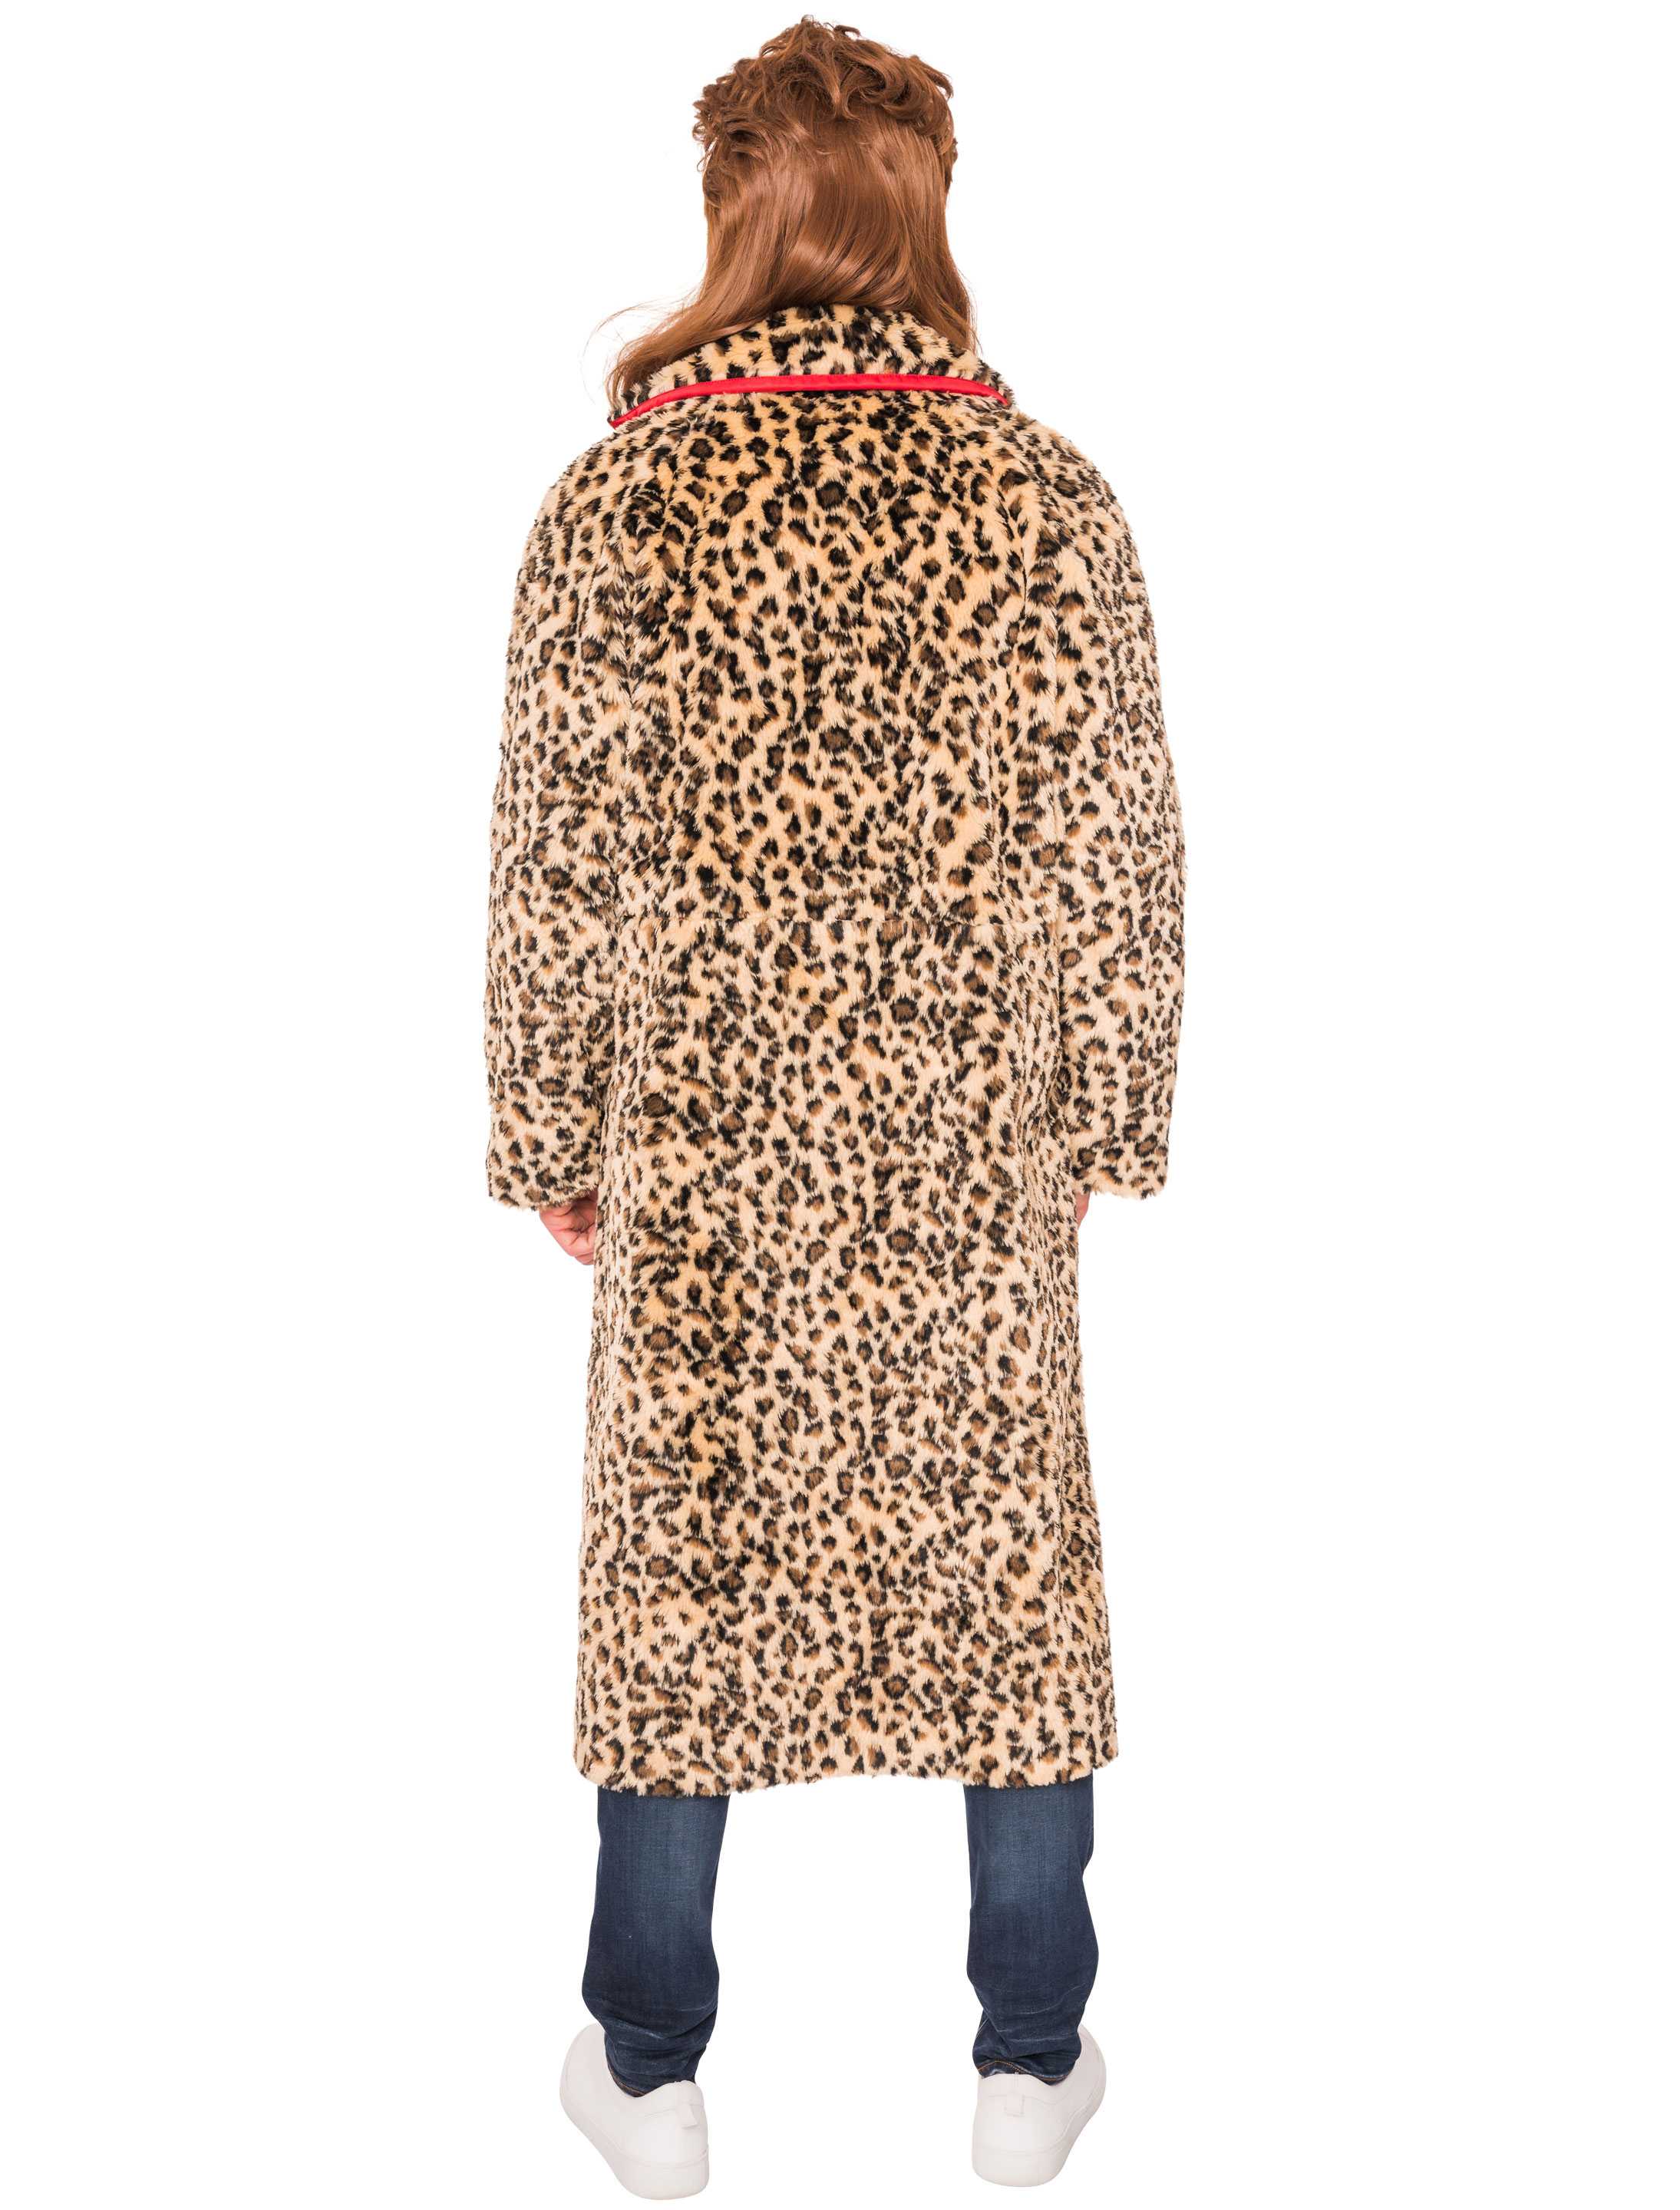 Mantel Leopardenmuster braun/schwarz S/M